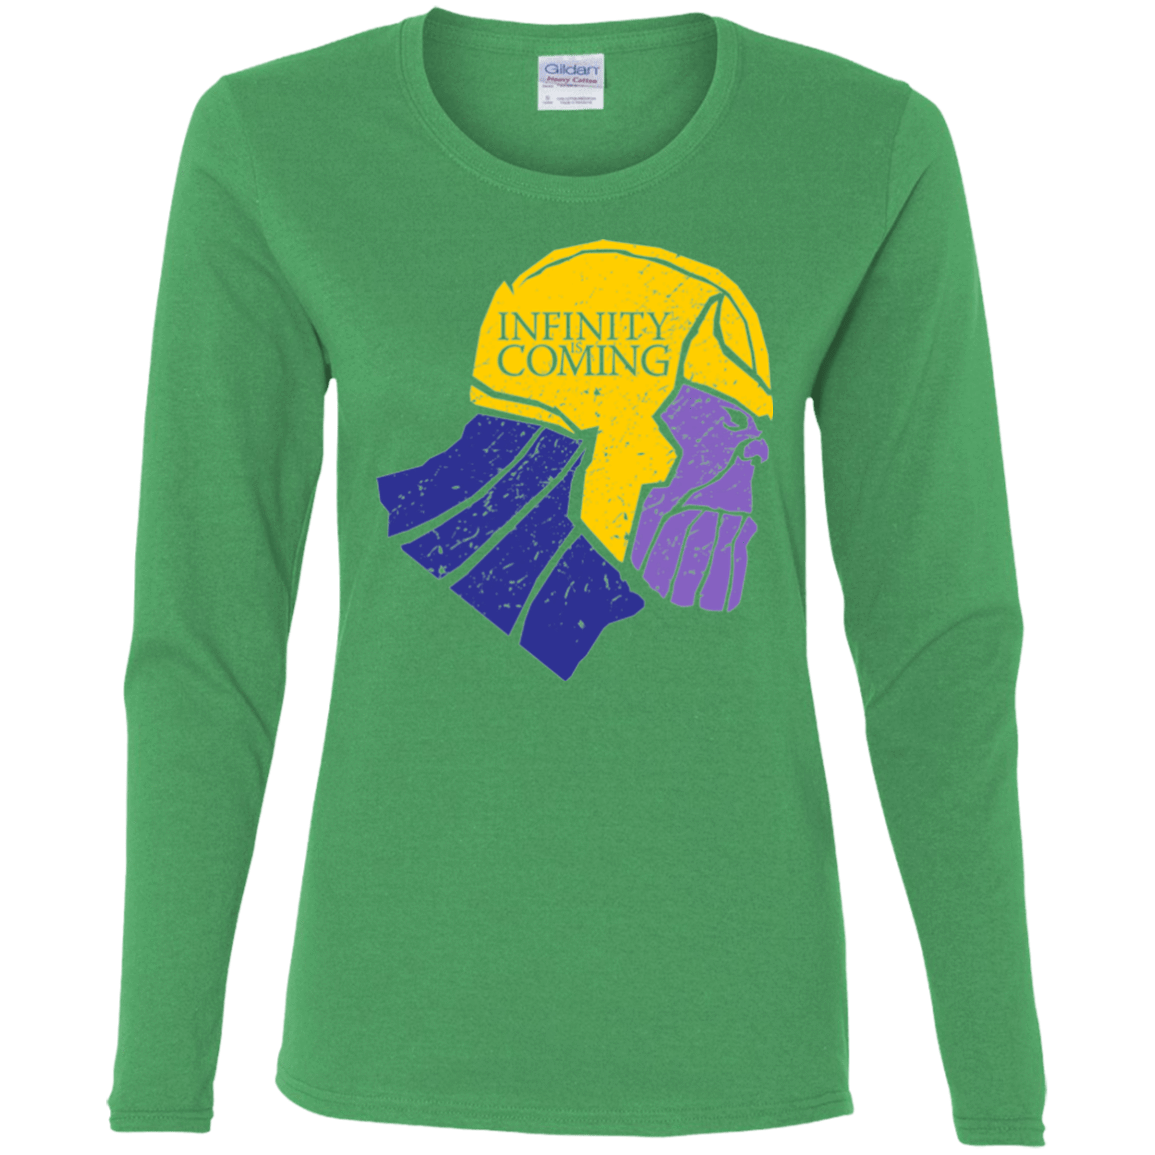 T-Shirts Irish Green / S Infinity is Coming Women's Long Sleeve T-Shirt